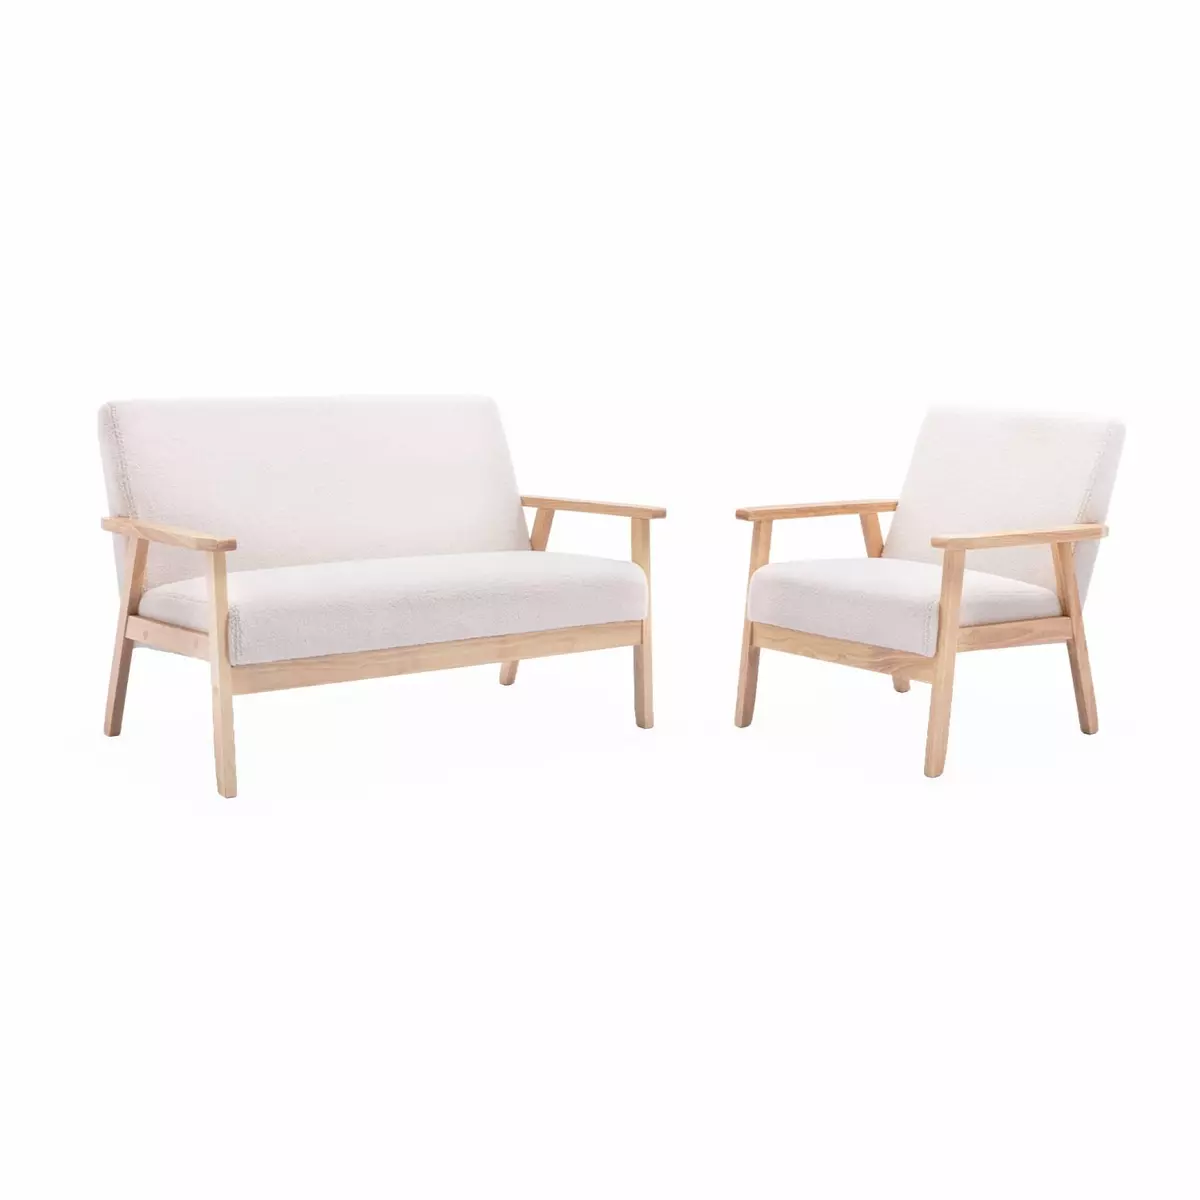 SWEEEK Banquette et fauteuil en bois et tissu bouclette. Isak. L 114 x l 69.5 x H 73cm